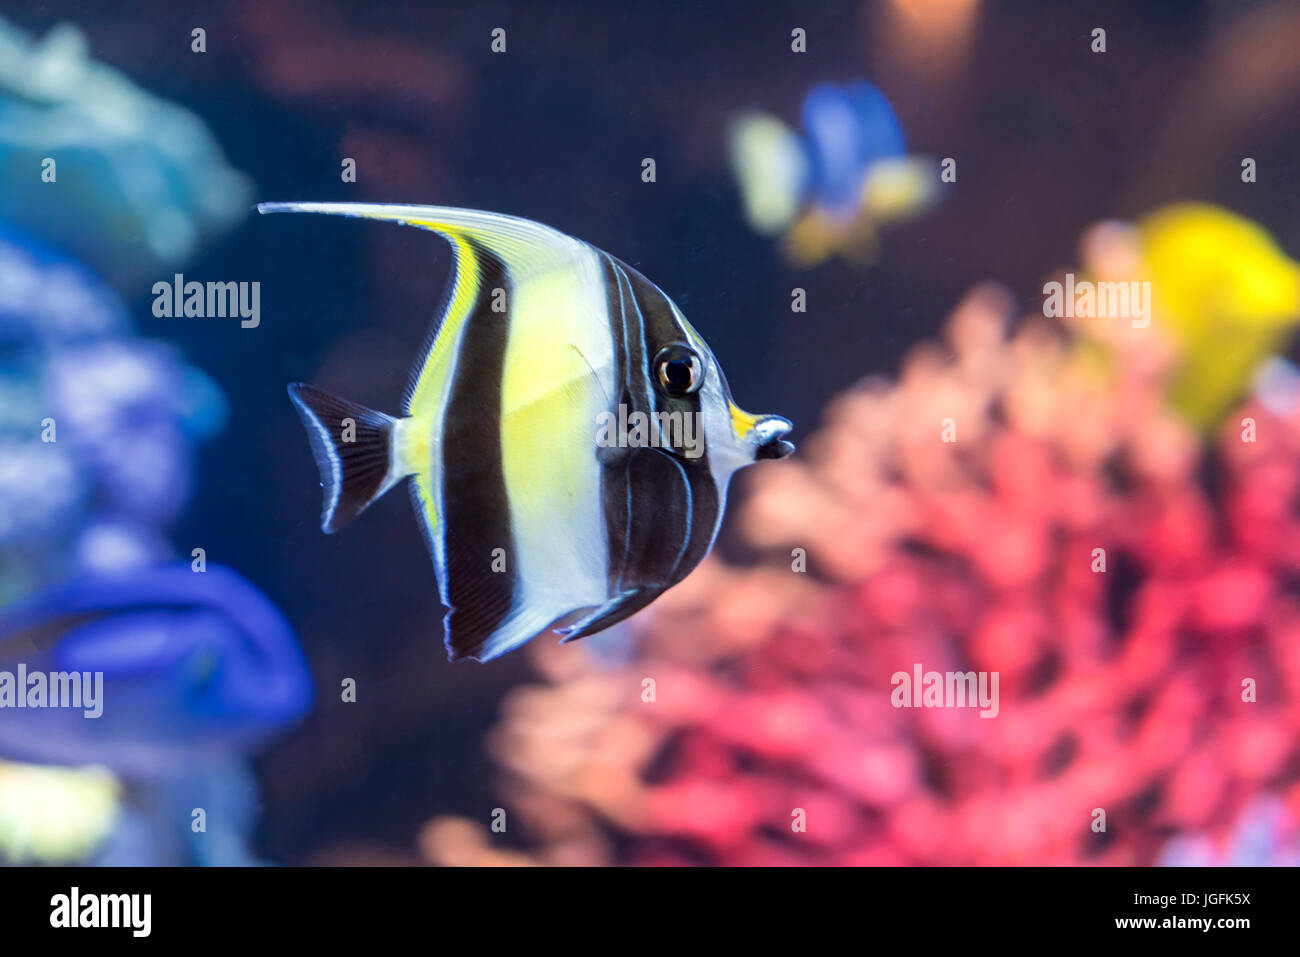 Idolo moresco pesce con configurazione a strisce sul corpo del giallo, colori bianco e nero nuota nei pressi di pietre e coralli colorati subacquea, immersioni subacquee, Zanclus cor Foto Stock